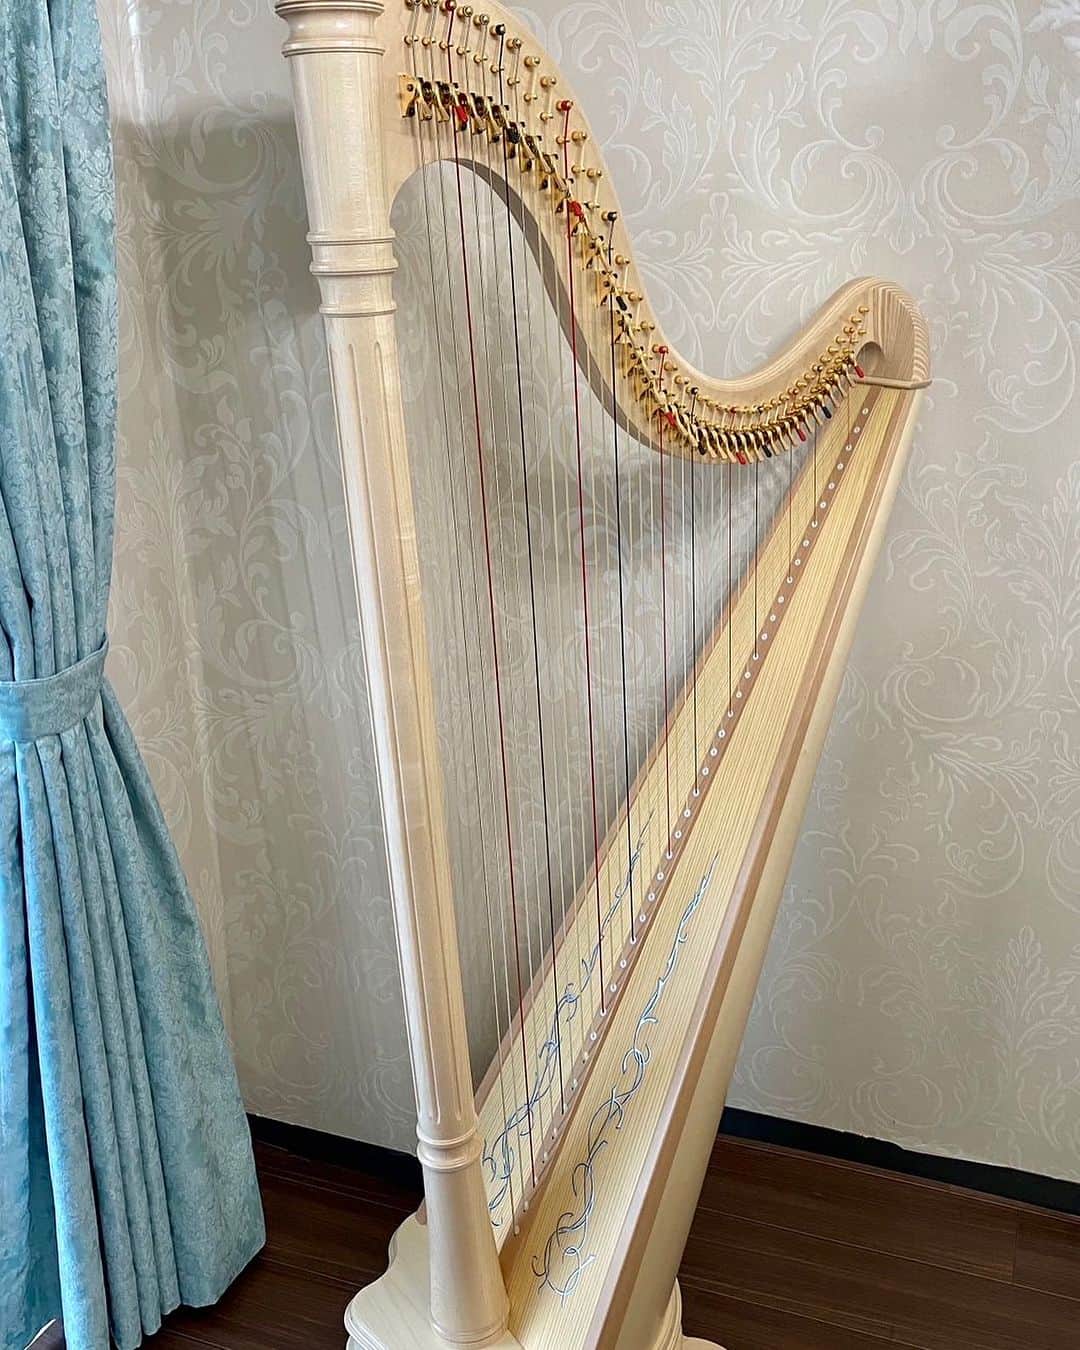 松岡みやびのインスタグラム：「#人生の転機  The beautiful new harp in my student room.  生徒さんから新しいハープが届いたと美しい写真を送っていただきました✨✨  salvi イタリア製🇮🇹 ANA deluxe Natural 40弦  グランドハープに形が似ていますがペダルではなく手のレバーで半音操作します✨  最高級のレバーハープ約100万円  壁紙もカーテンもご自身でDIYなさったそうで、エレガントな水色のハープ模様にぴったりなお部屋ですね🩵  初心者にしては高価な金額で迷われる方々も多いと思いますが、単なる楽器ではなく人生を共に歩むパートナーとして一生大切に毎日心ときめく✨存在になるのであれば、  ハープは幸せに導いてくれる女神様になり、お部屋を浄化してくれるパワースポットになります🗽  生徒さんから心のこもった感動的なメッセージをいただきましたのでご紹介しますね💖  ・・・・・・・・・・・・・・・  SalviのAna DELUXEのナチュラル様とご縁があり、本当に嬉しいです。あのとき「上達したらにしようかな…」という迷いに負けず、勇気を出して買い換えることを選んでよかったとつくづく思います！！練習やハープへの想いが一気に変化しました。  一流の物には一流の理由があり、ここに来るまでに携わってくださった方達の技術や想いが乗ってくれる気がして、存在そのものから深い愛情を感じられますね。。 これまでの人生で一番感動したお買い物になりました。  それもこれも、すべてはみやび先生との出逢いがきっかけです。 みやび先生を知ってまだ半年ですが、人生がガラッと変わって、今も進化の最中です。  本当に感謝してもしきれないし、今世はこれから先もずっとミヤビメソードで繋がっている人生を歩みたいです。  みやび先生、本当にありがとうございます。  みやび先生が大好きです🪄」